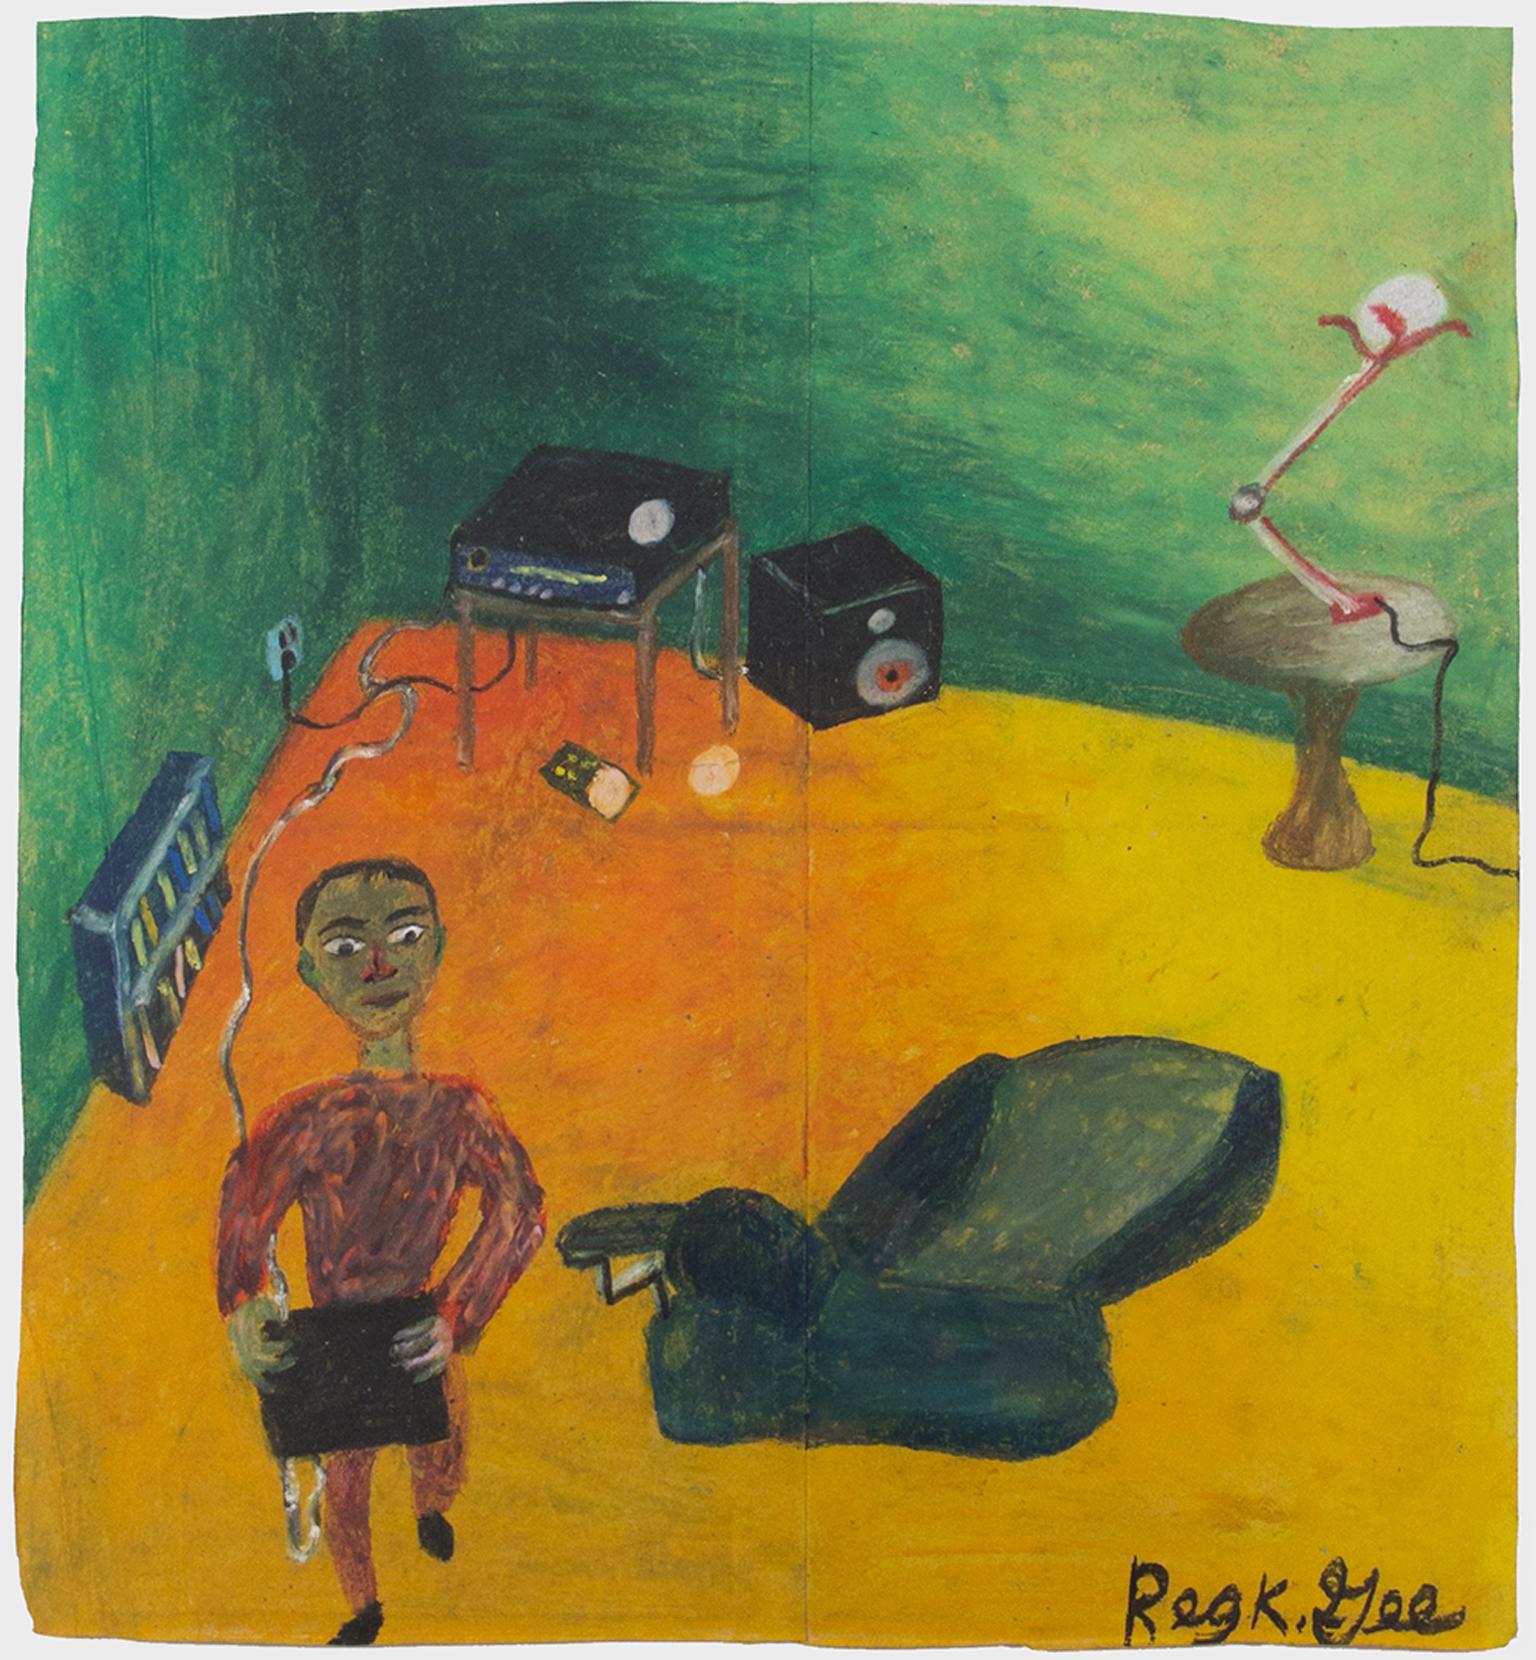 "Searching for Surround Sound" est un dessin original au pastel gras sur sac d'épicerie réalisé par Reginald K. Gee. L'artiste a signé l'œuvre en bas à droite. Elle représente un homme dans un intérieur. 

13 5/8" x 12 1/2" art
Cadre de 20 1/2" x